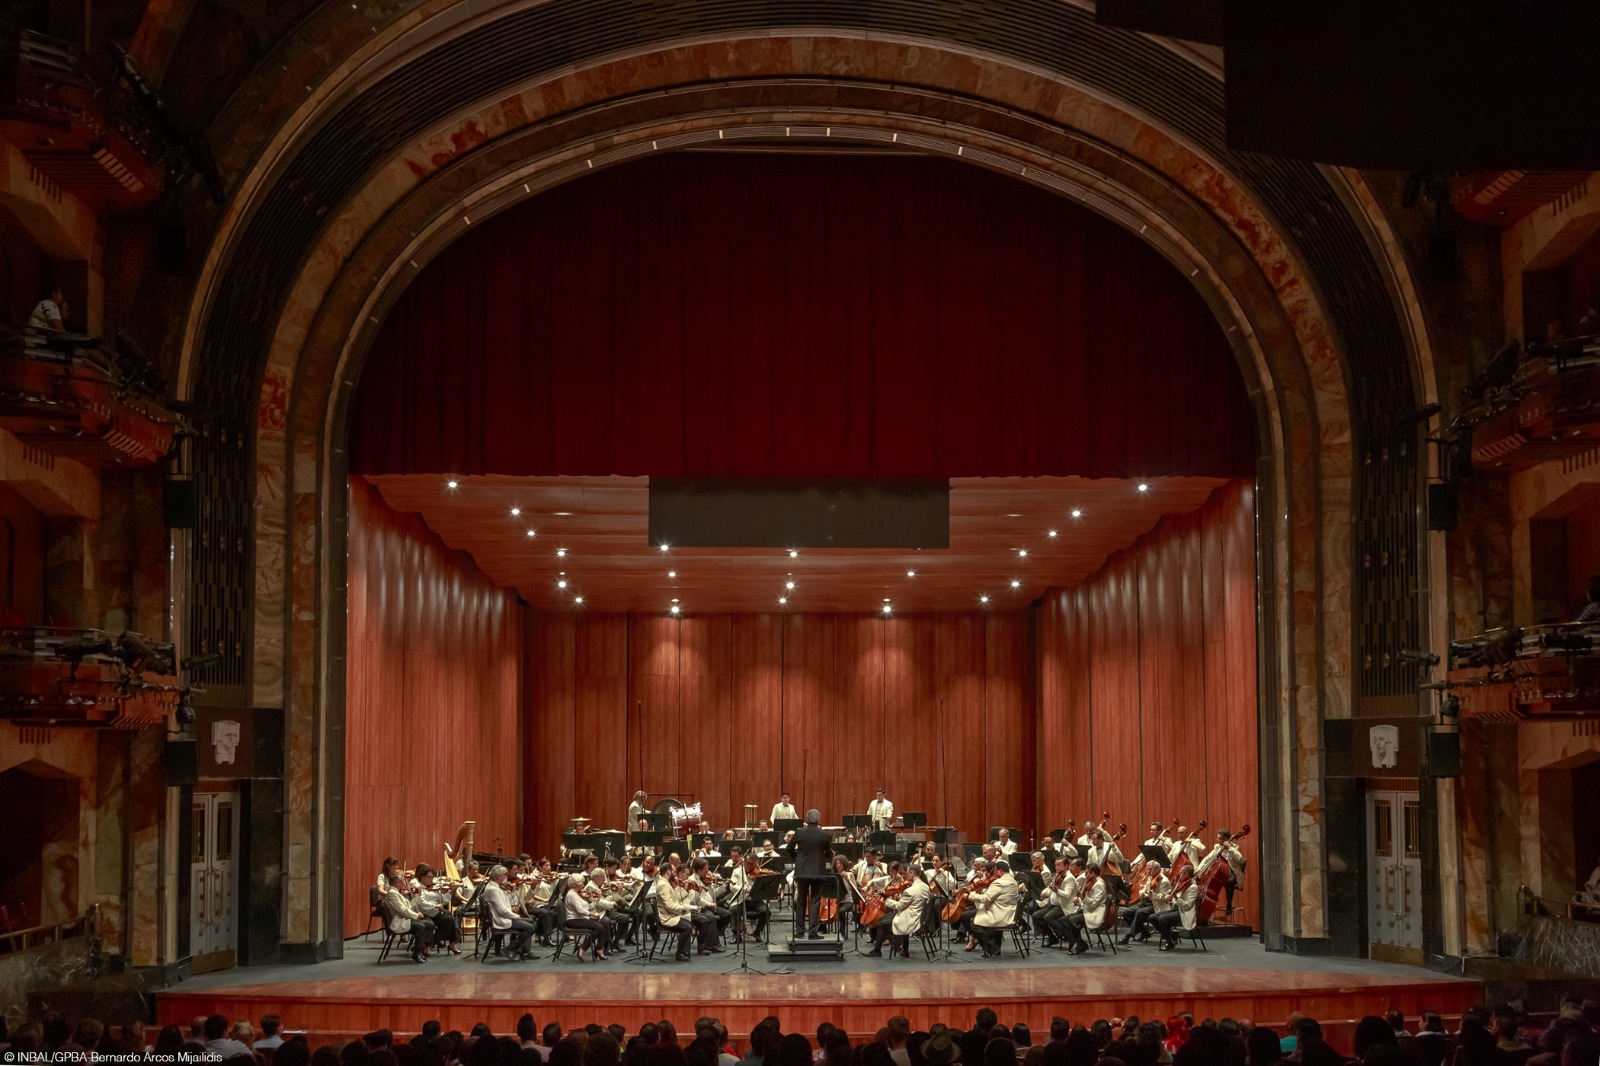 <p><strong>La Orquesta Sinfónica Nacional celebrará su 95 aniversario con un Concierto de Gala </strong></p>
